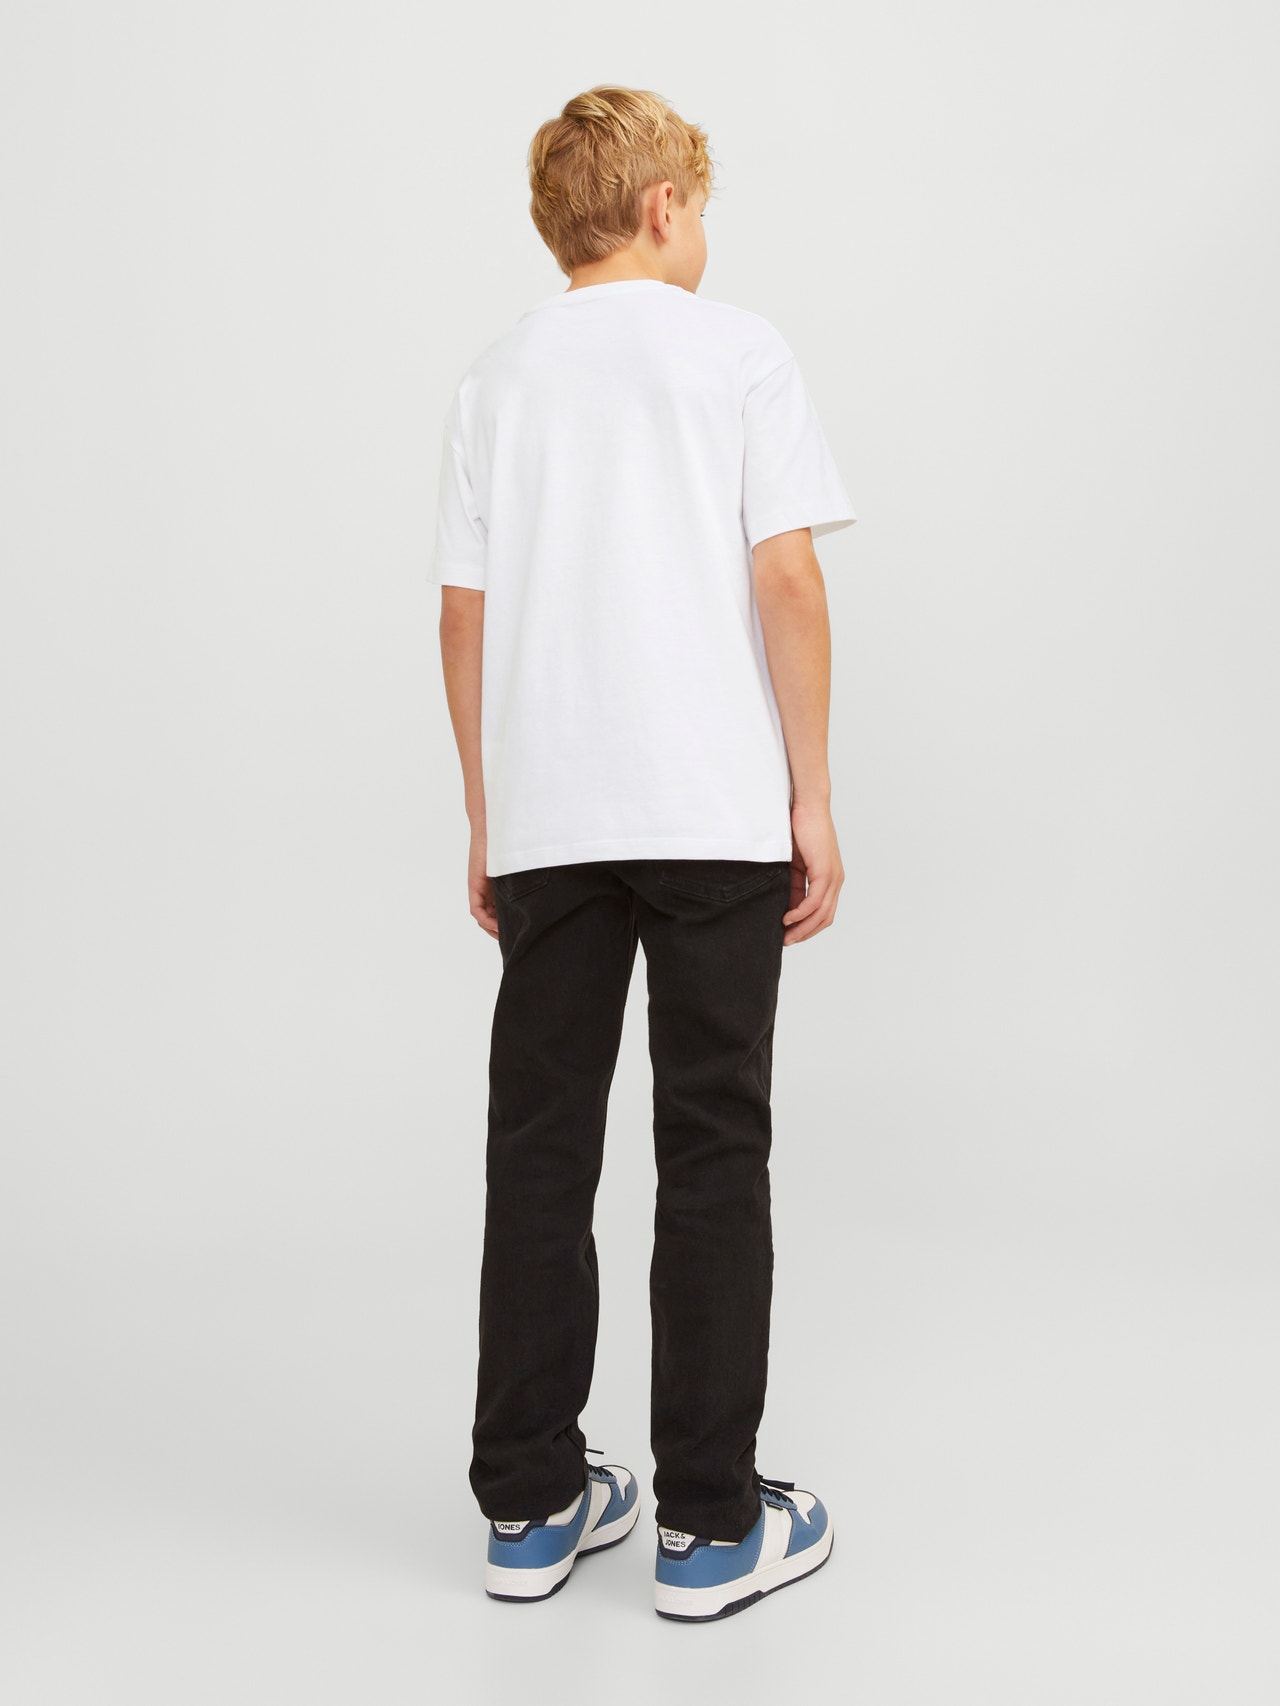 Jack & Jones Z logo T-shirt Mini -White - 12258925